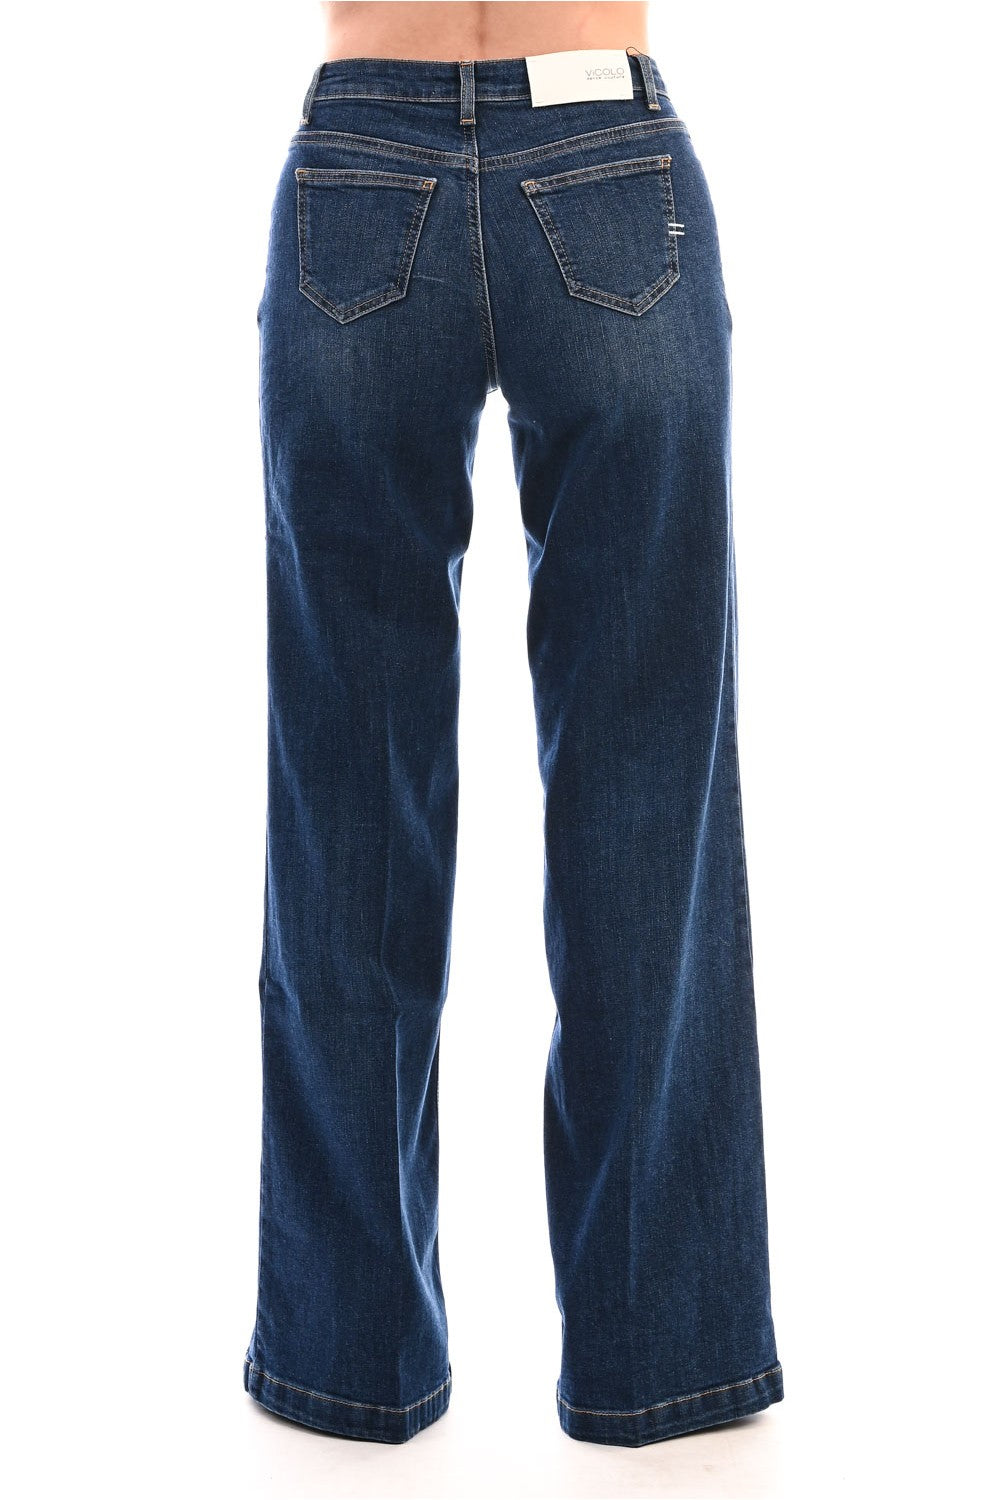 Vicolo donna jeans DR5018